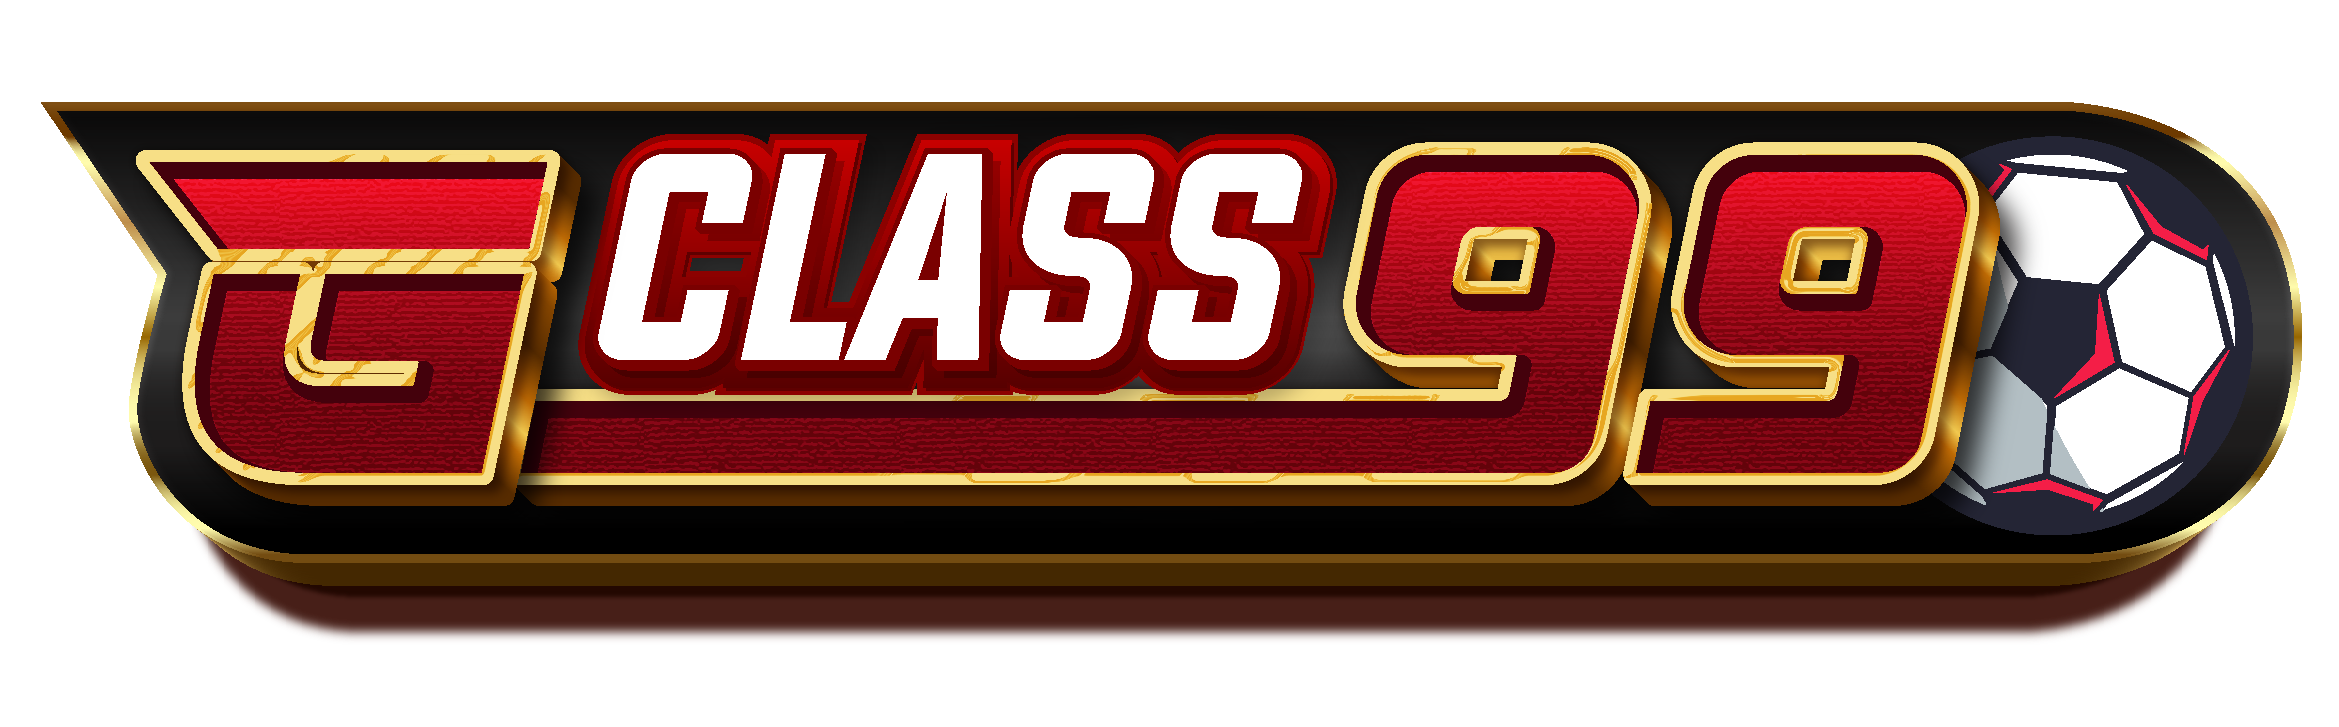 Casino slot online logo